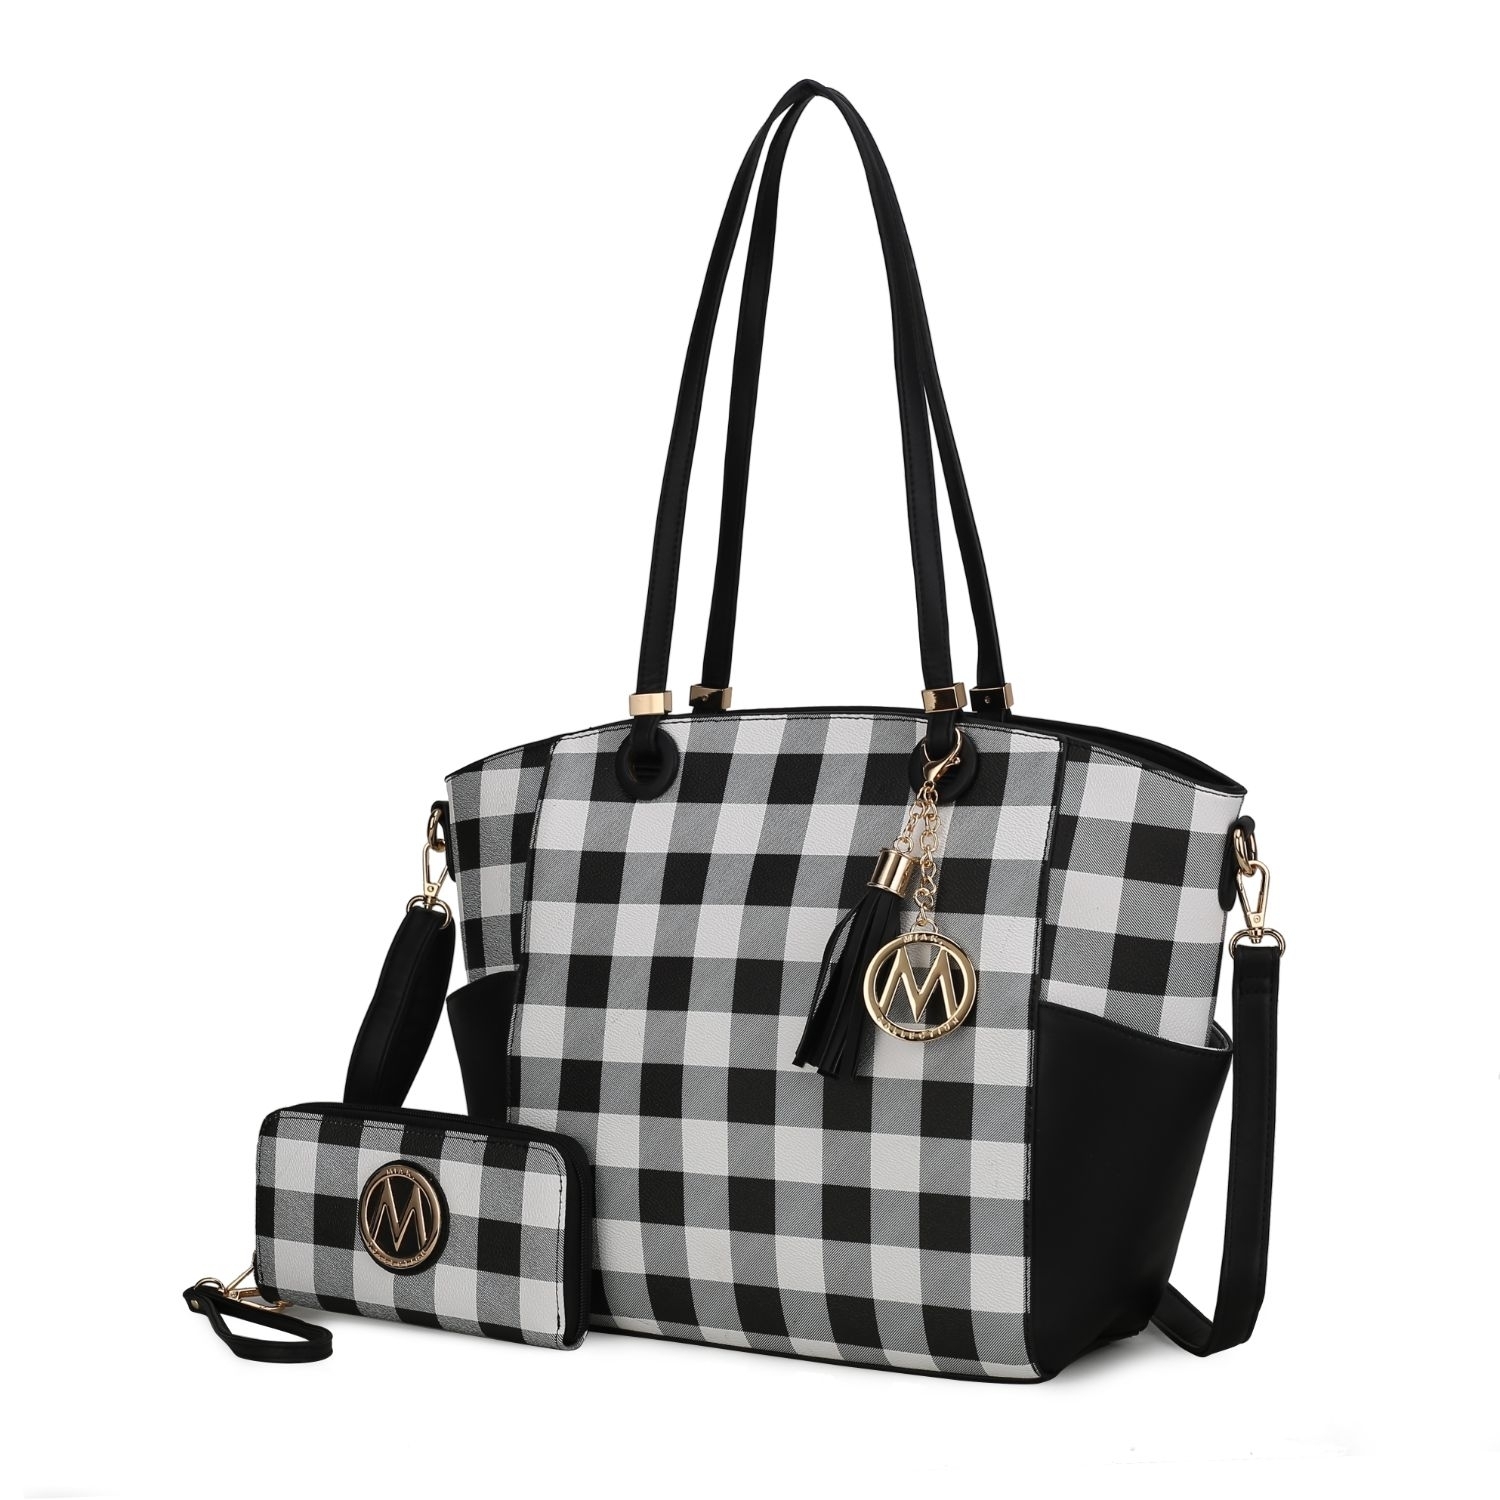 MKF Collection Karlie Tote Handbag With Wallet By Mia K - 2 Pieces - Cognac Brown